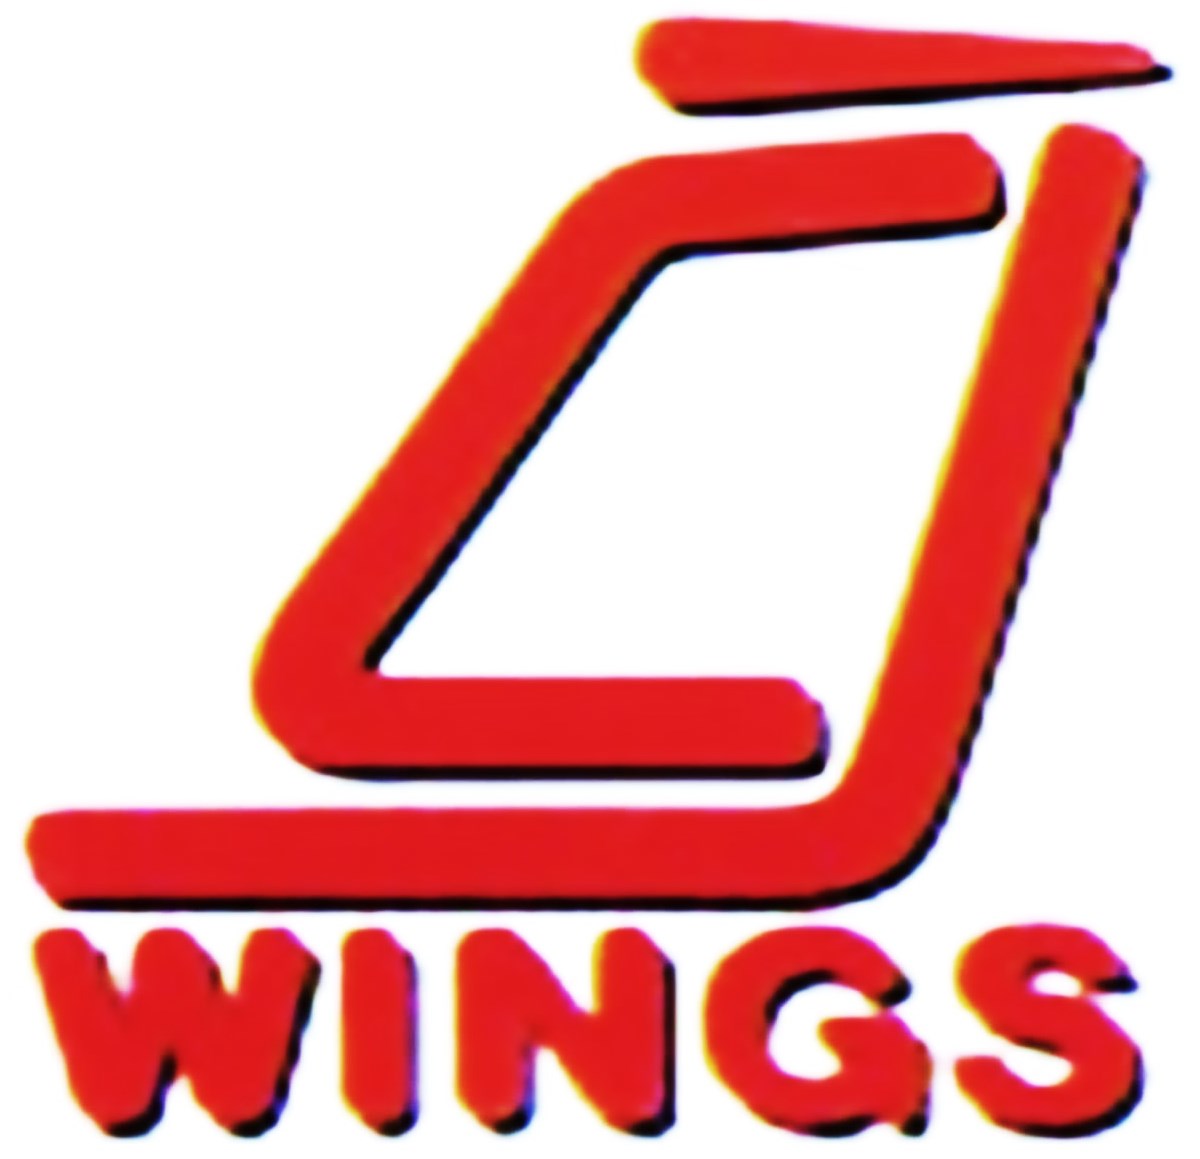 JC Wings (old logo)
Keywords: JC Wings